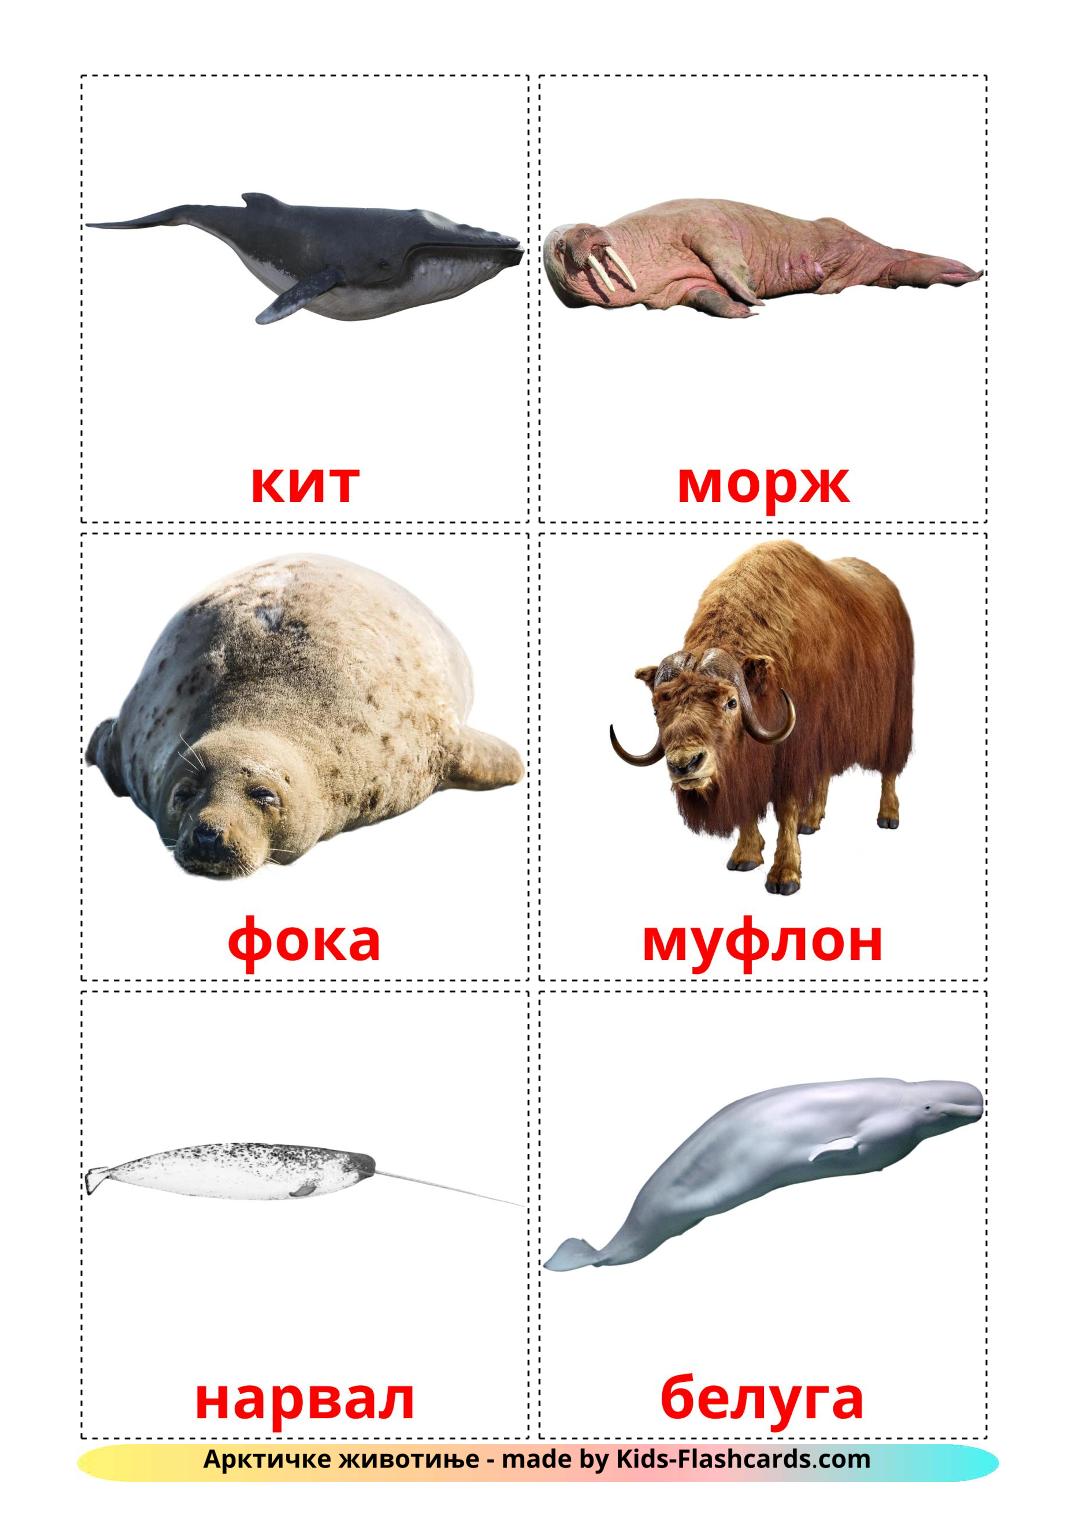 Les Animaux de l'Arctique - 14 Flashcards serbe(cyrillique) imprimables gratuitement